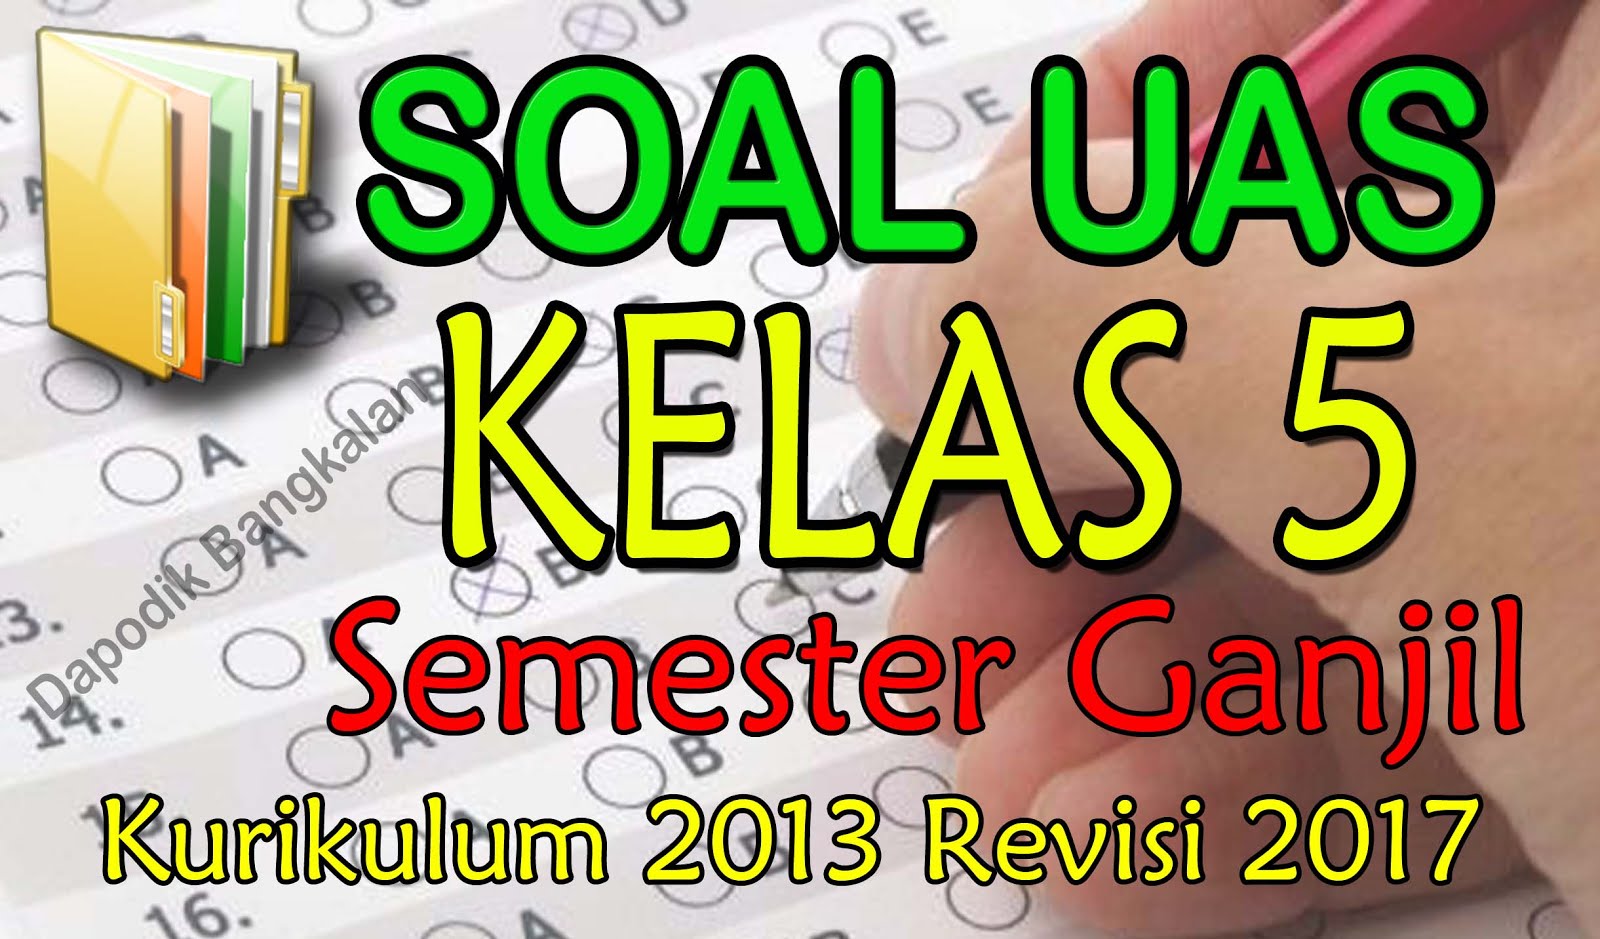 SOAL UAS/PAS Kelas 5 Semester Ganjil Kurikulum 2013 Revisi 